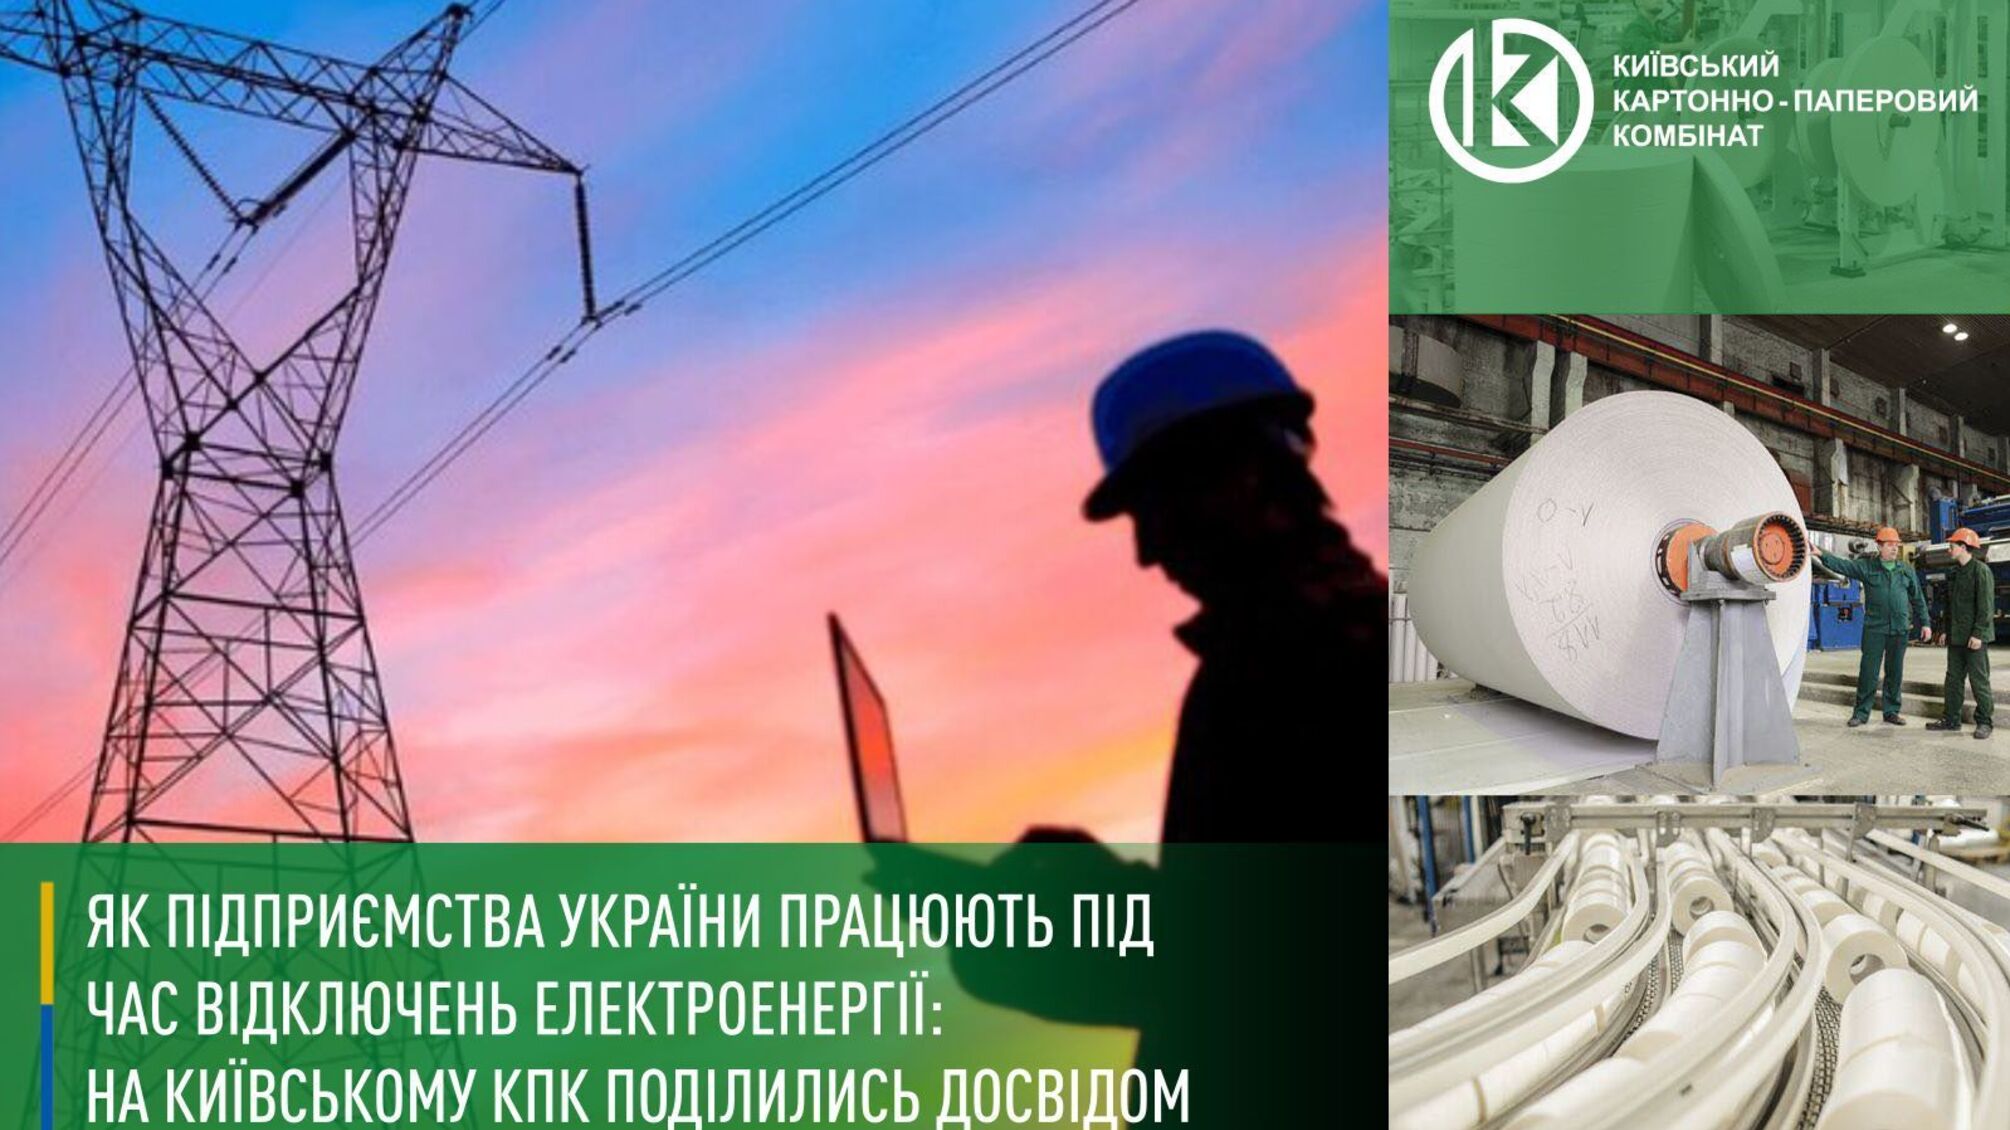 Як підприємства України працюють під час відключень електроенергії: на Київському КПК поділились досвідом